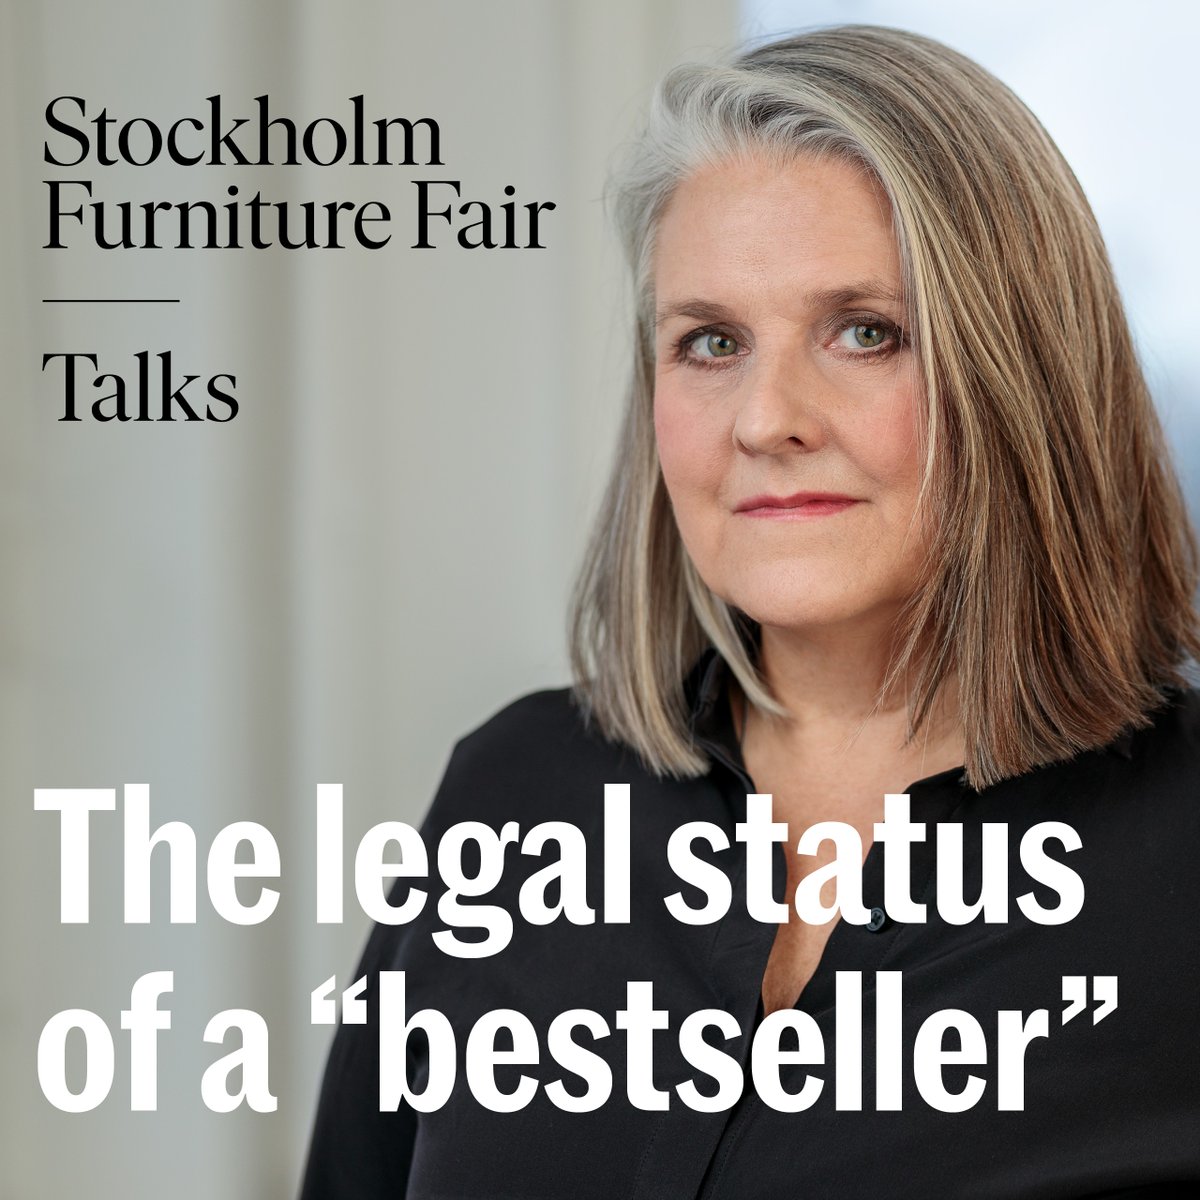 Vi deltar på Stockholm Furniture Fair. Om du är på mässan, titta in den 7/2 kl. 13.30 i Greenhouse i Hall C. Vår förbundsjurist Katarina Renman Claesson kommer att prata om bästsäljarens juridiska status. Välkomna! #sthlmfurnfair @ClaessonK